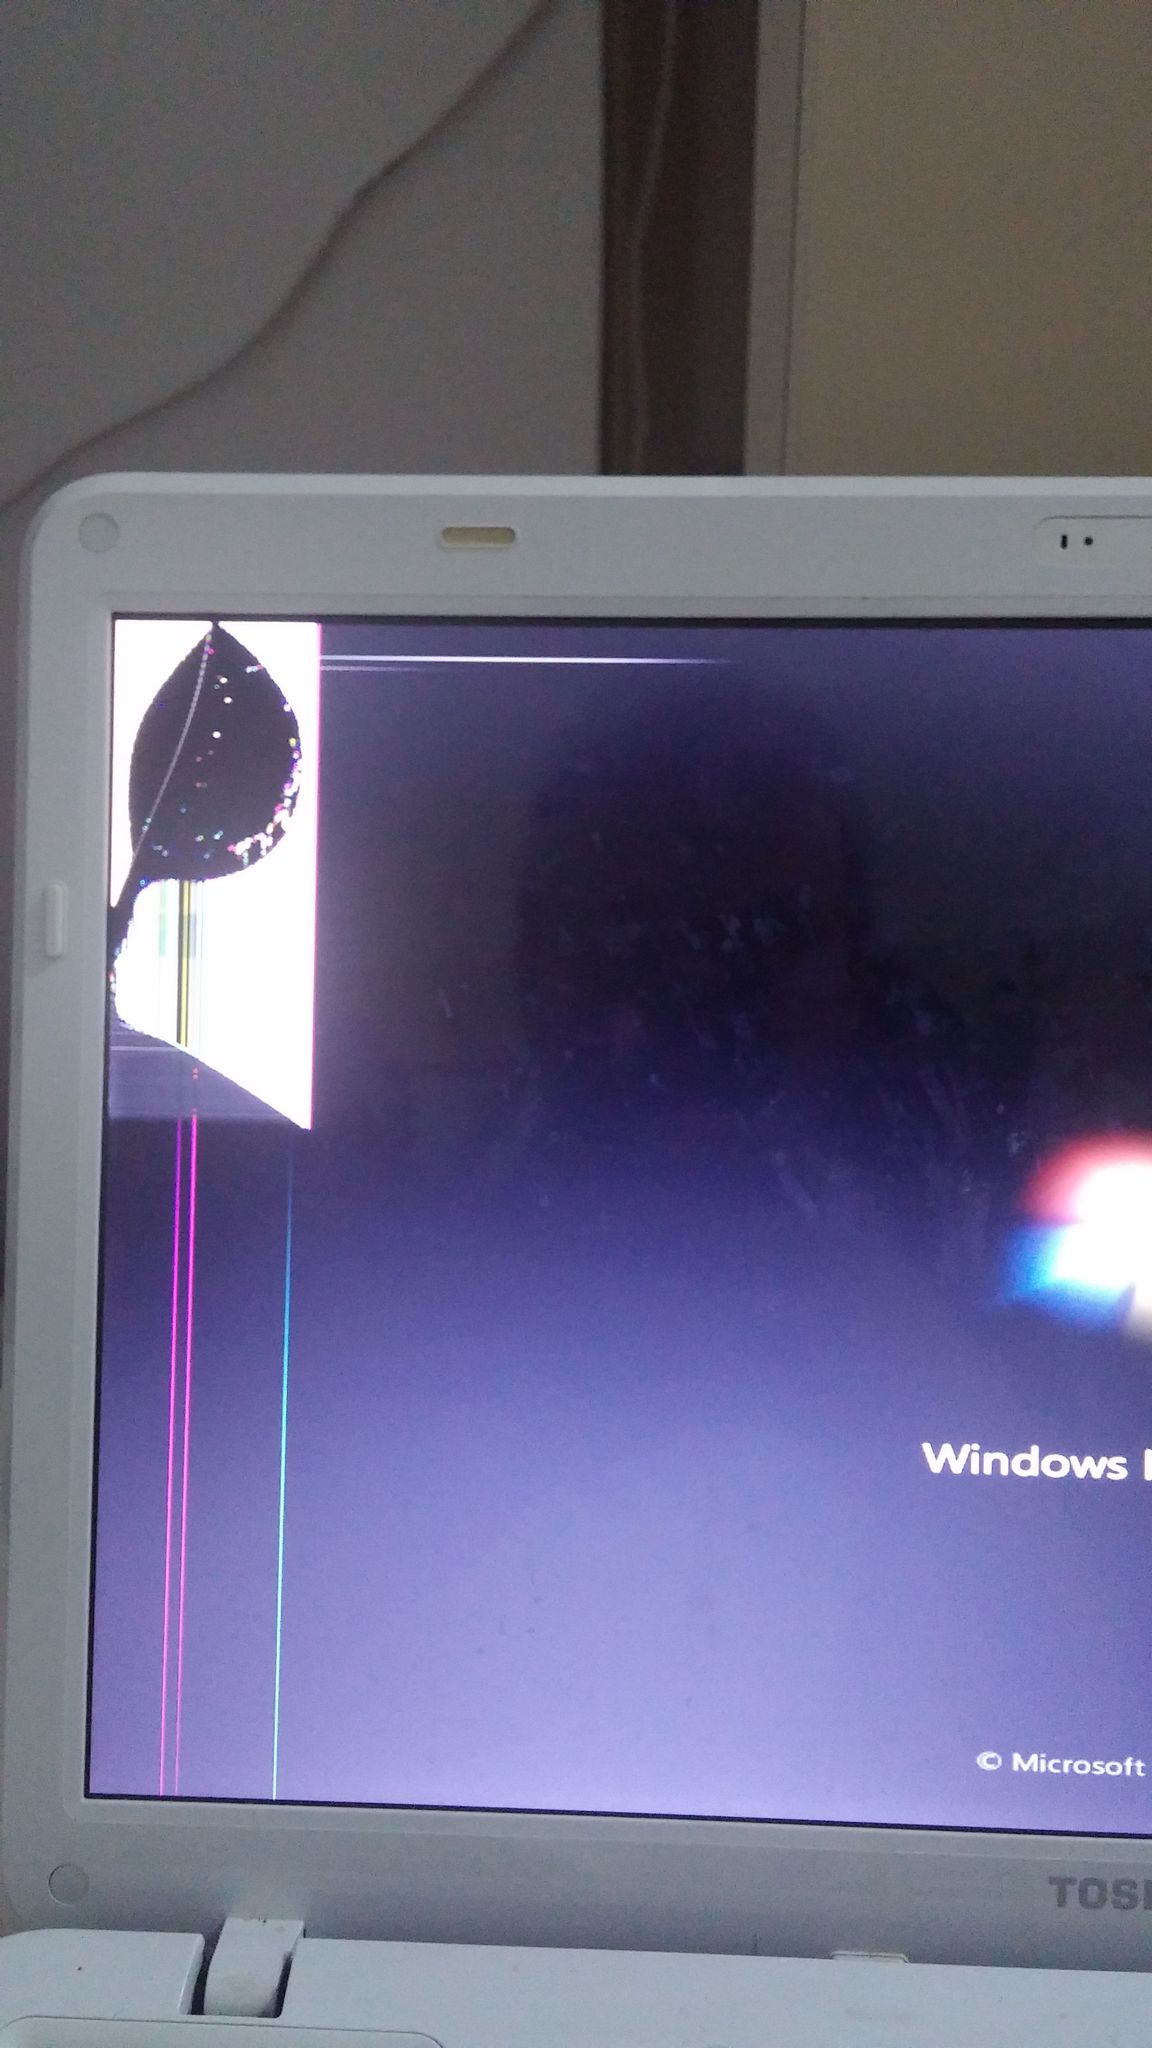  Laptop ekraninda siyahlik sorunu